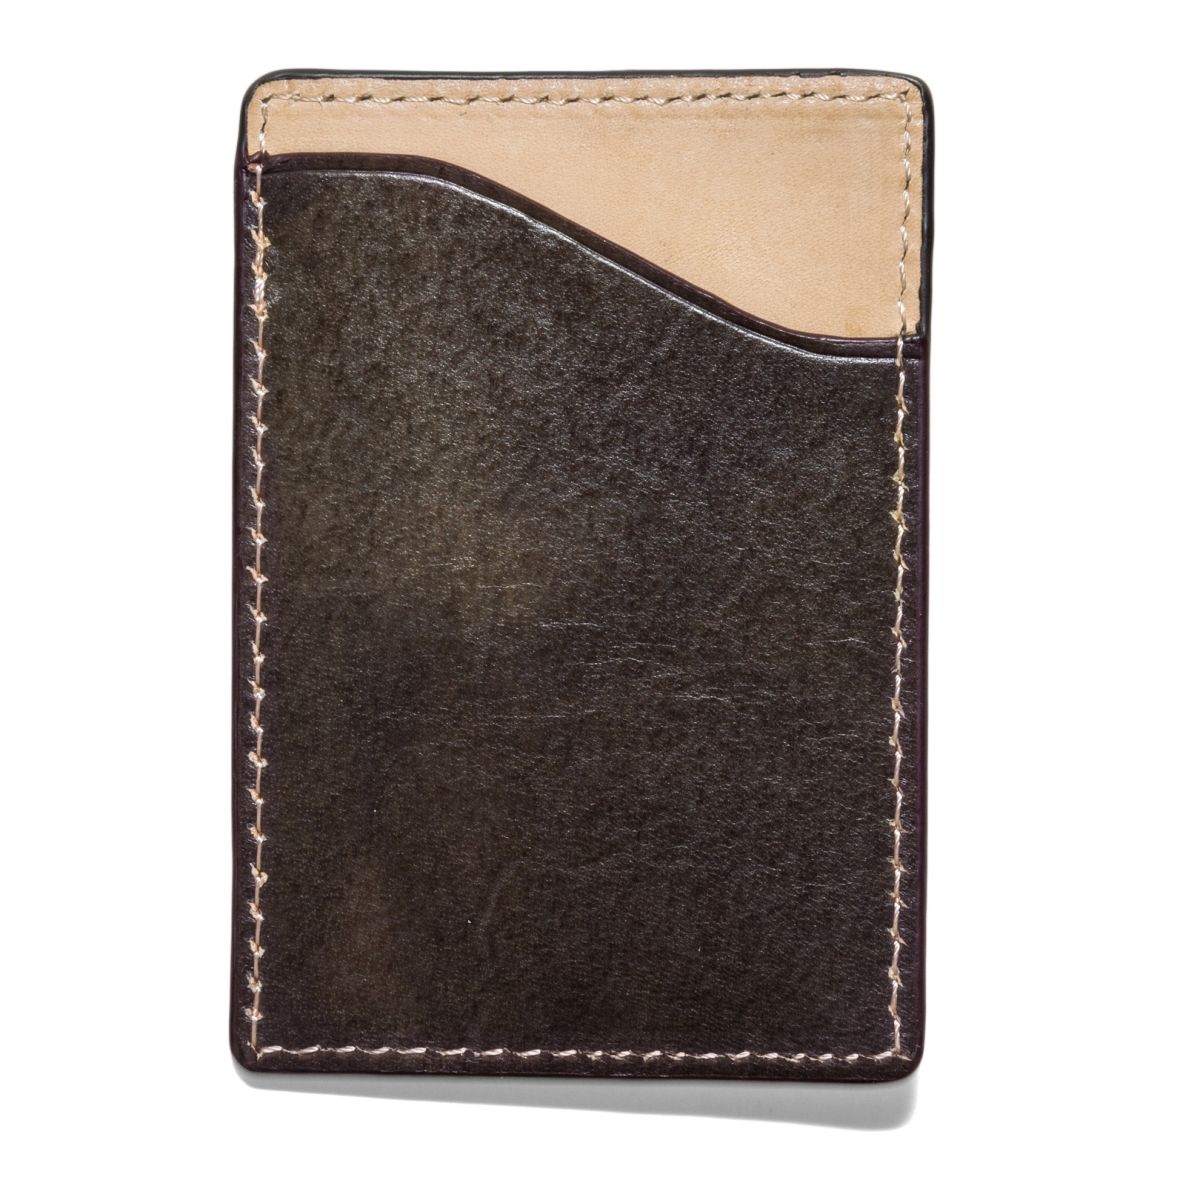 J.FOLD FLAT STASH Leather Wallet - Olive